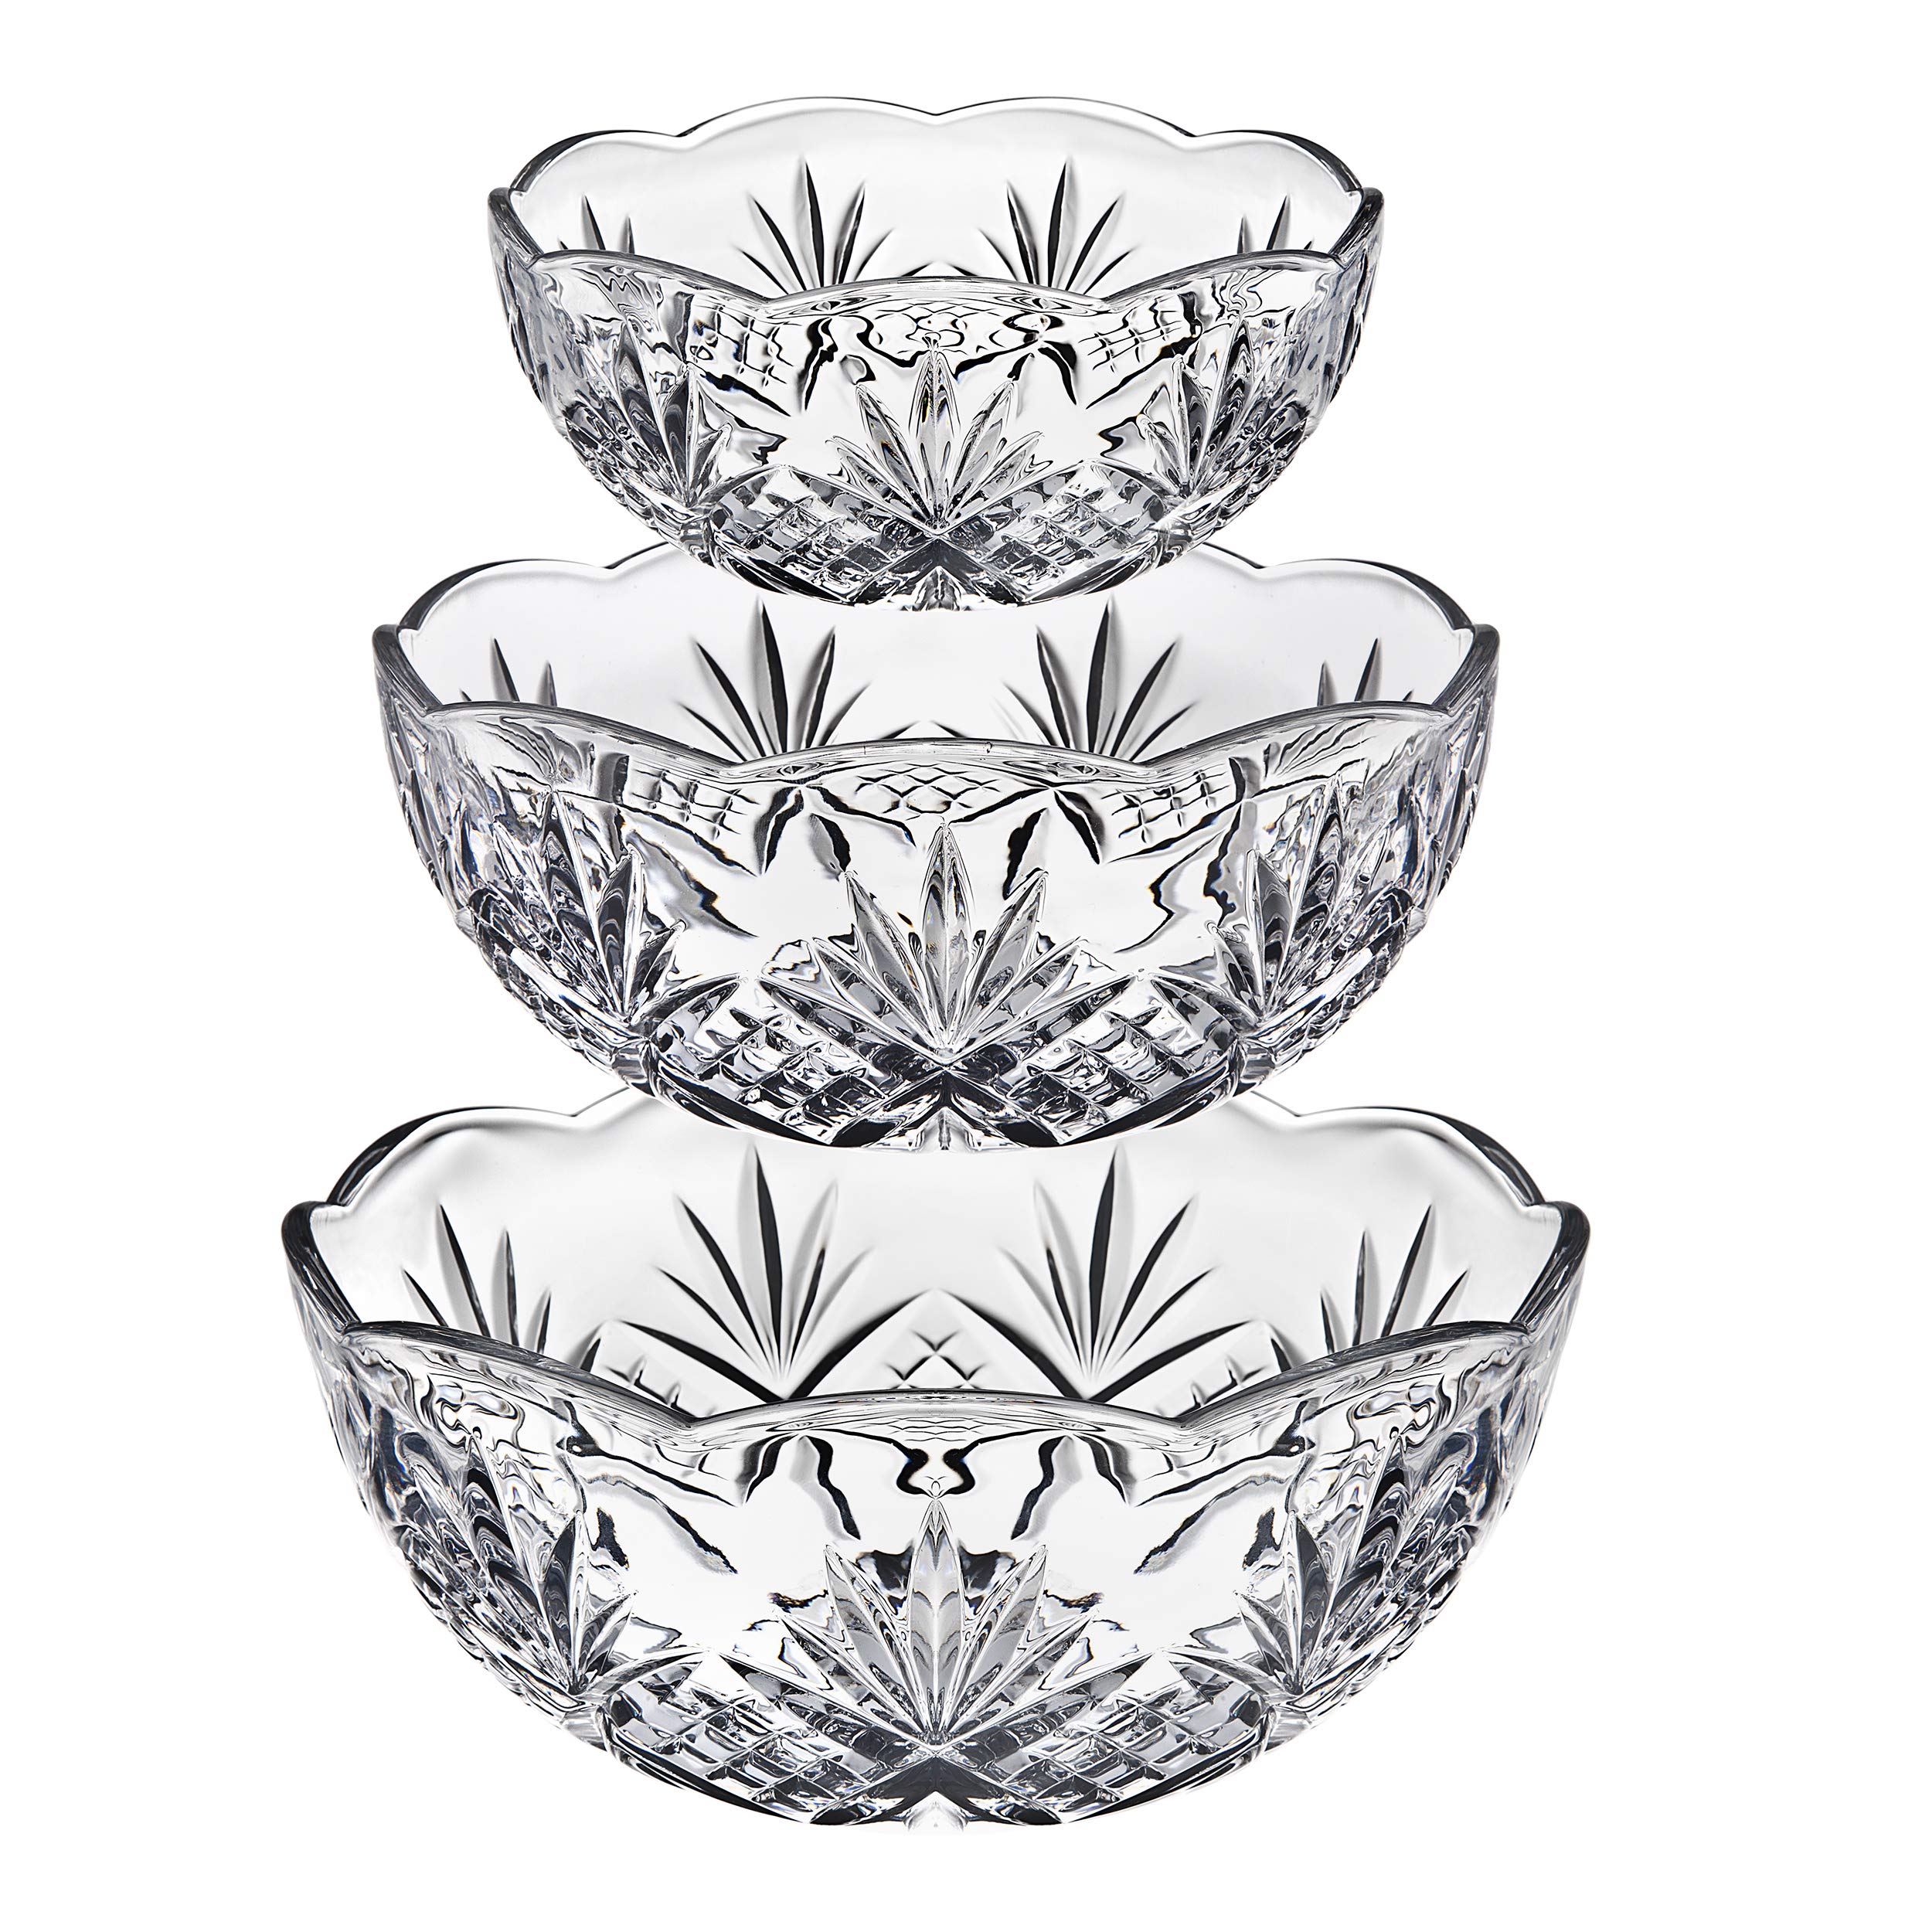 Godinger Bowl Set for Salad, Serving, Mixing, Dublin Crystal Collection - Set of 3